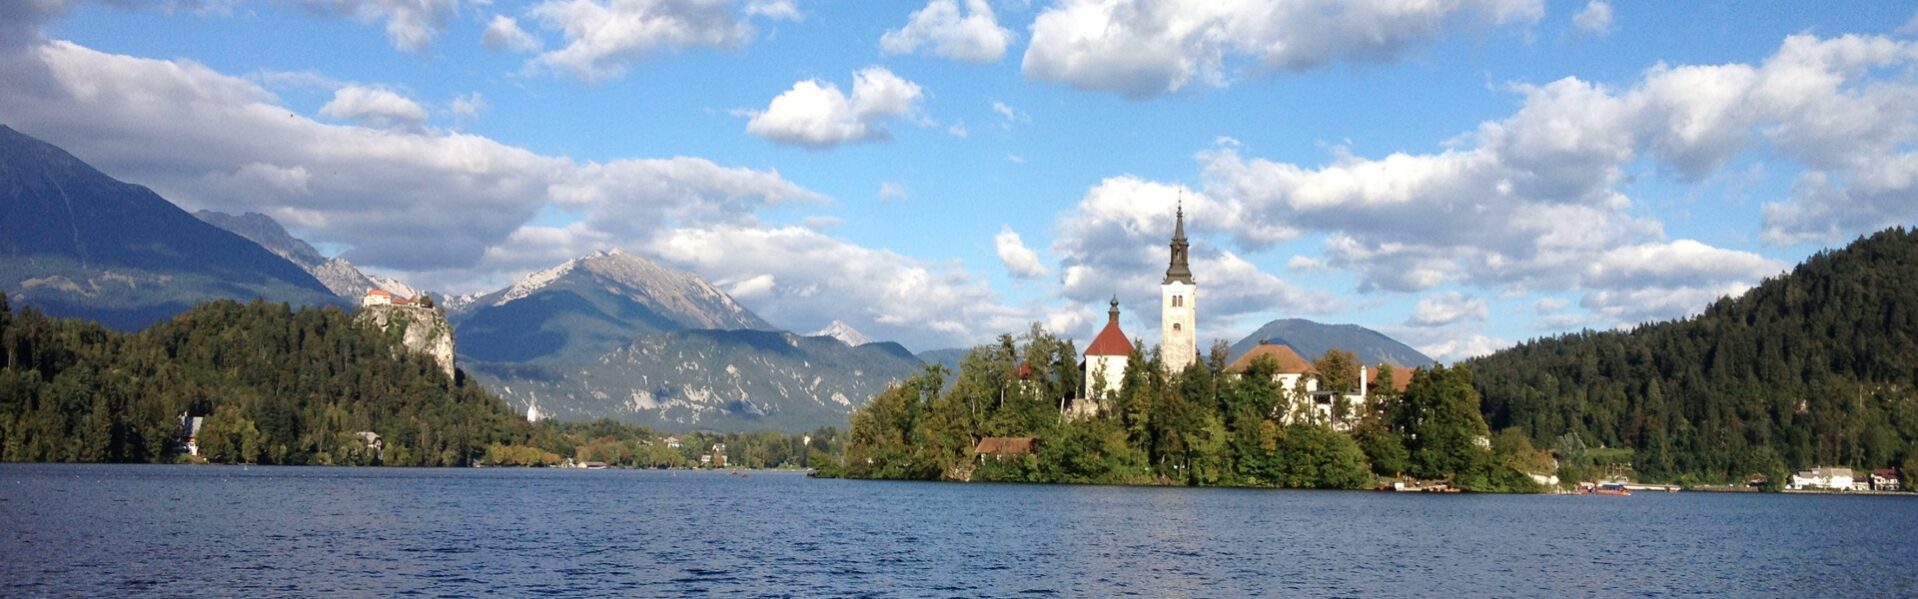 Slovenië reisinformatie voor jouw vakantie